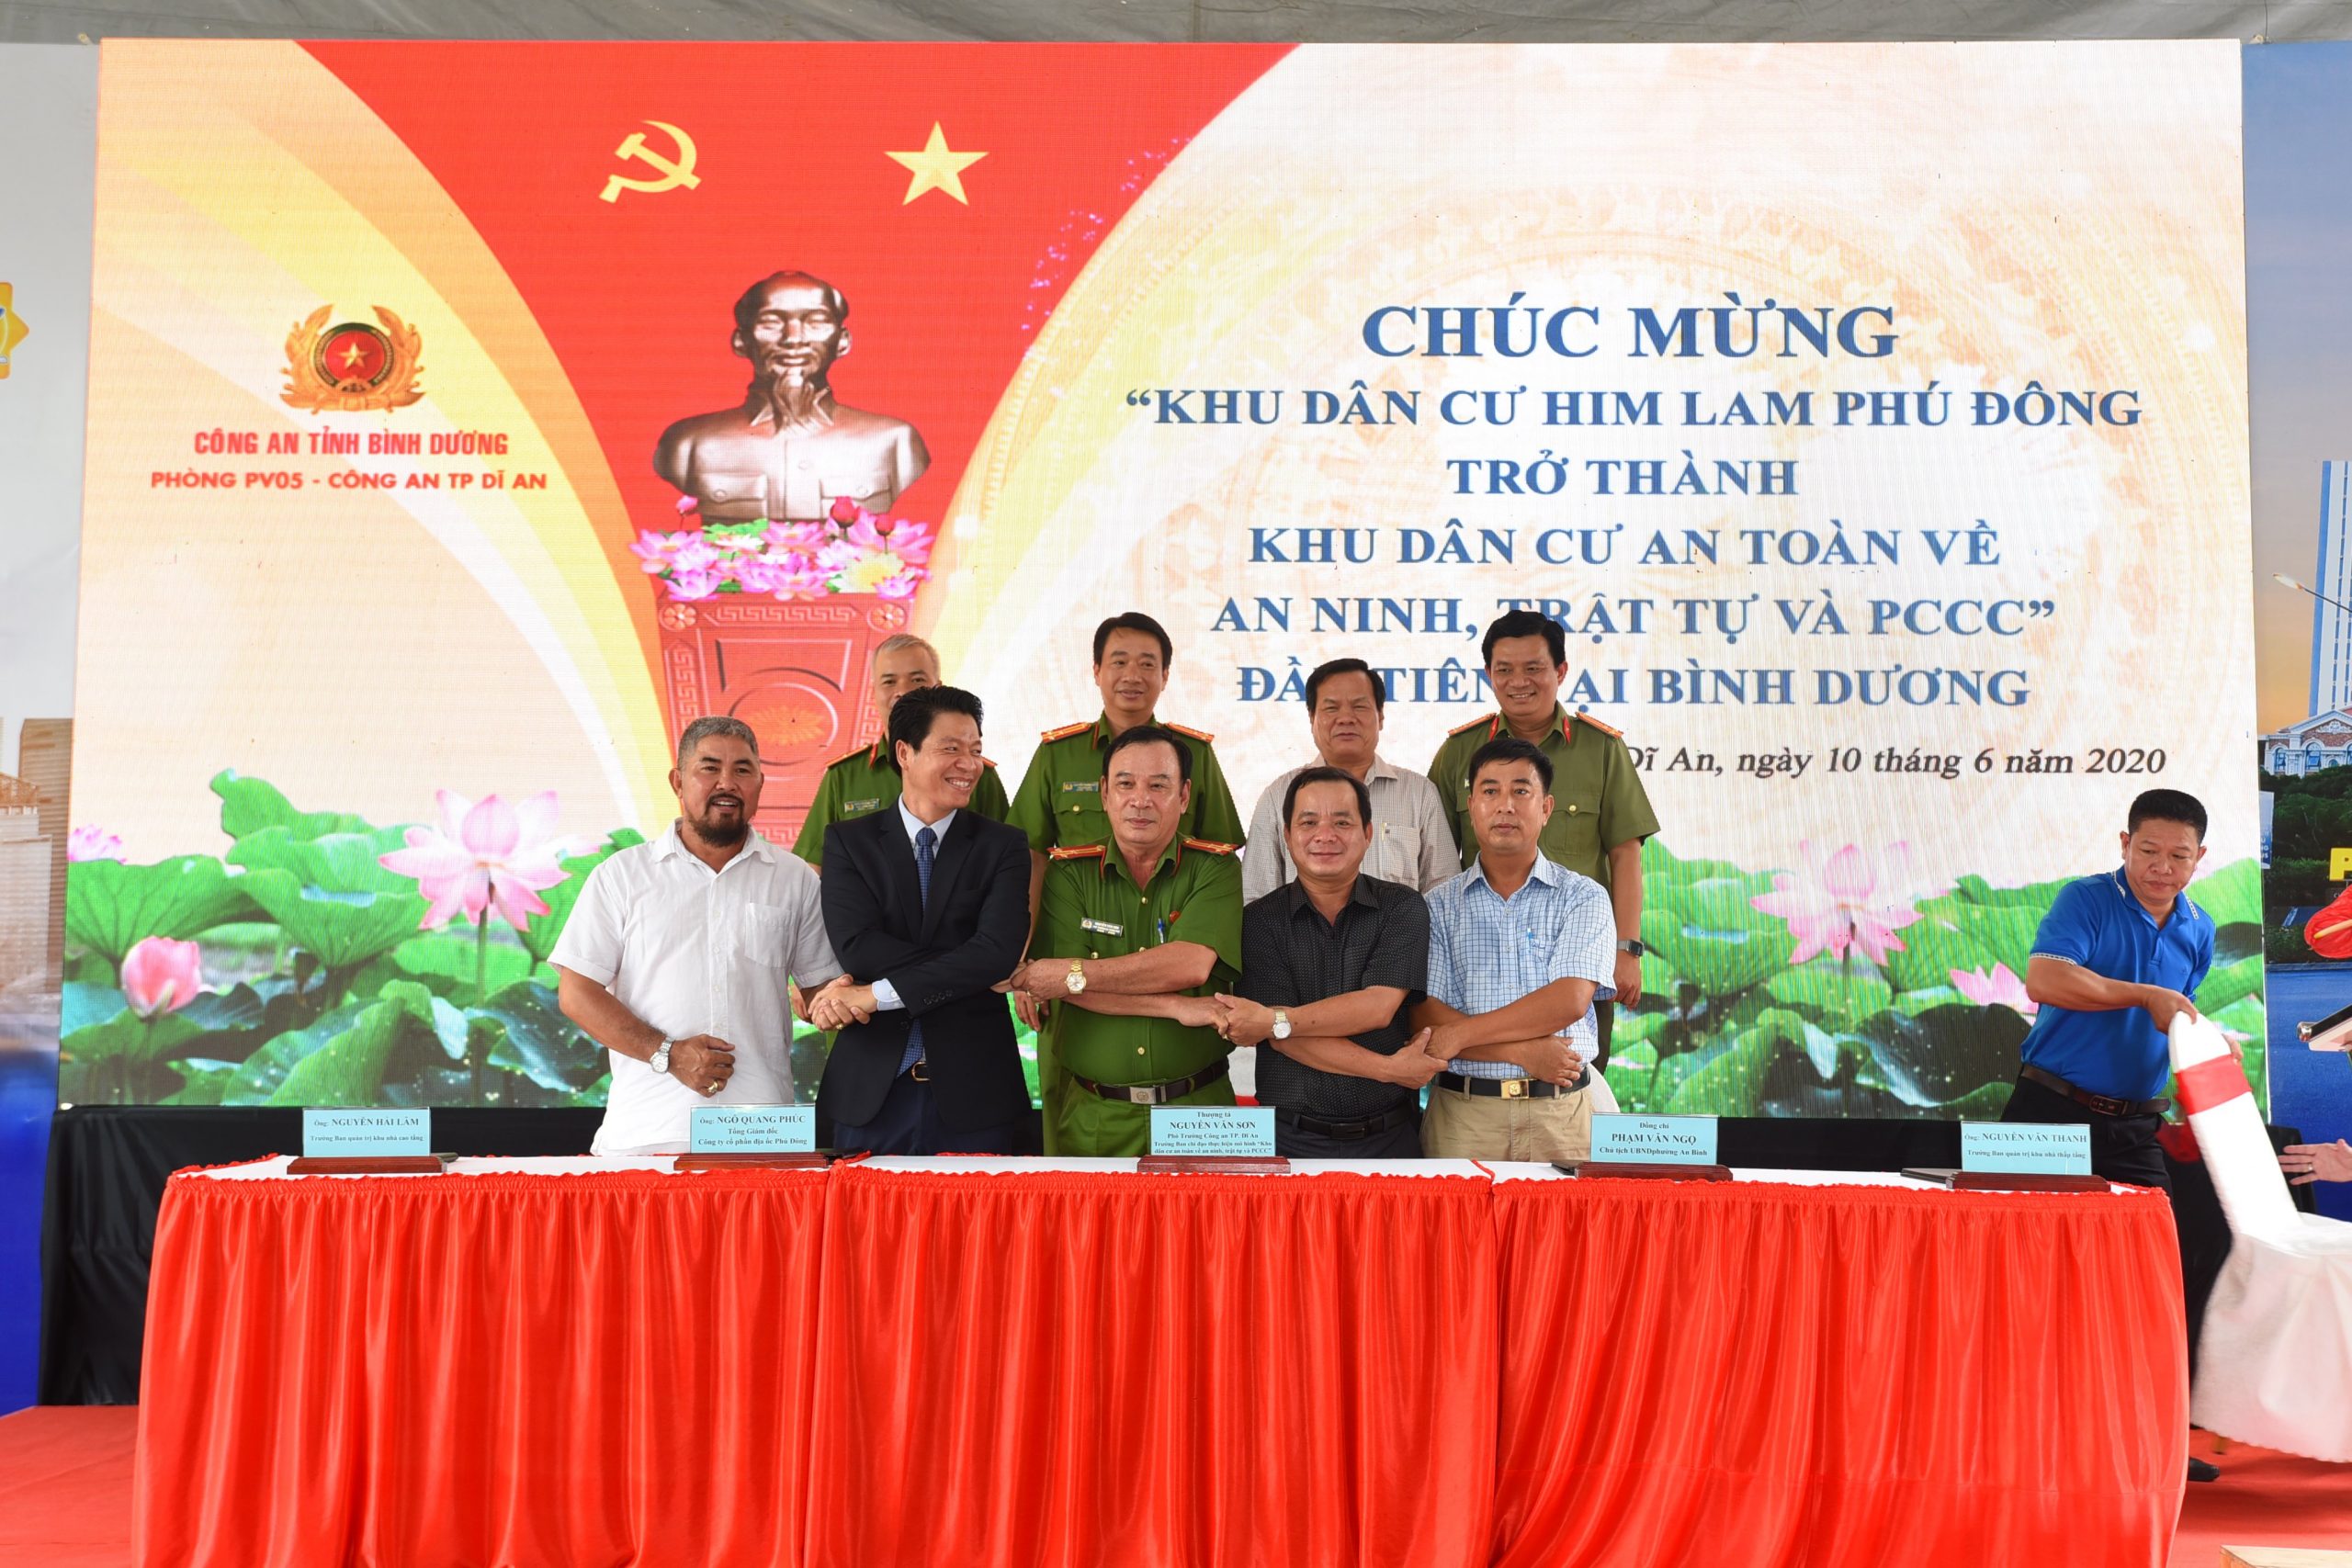 ành trình xây dựng cộng đồng văn minh của Phú Đông Group nhận được sự ghi nhận từ chính quyền địa phương.